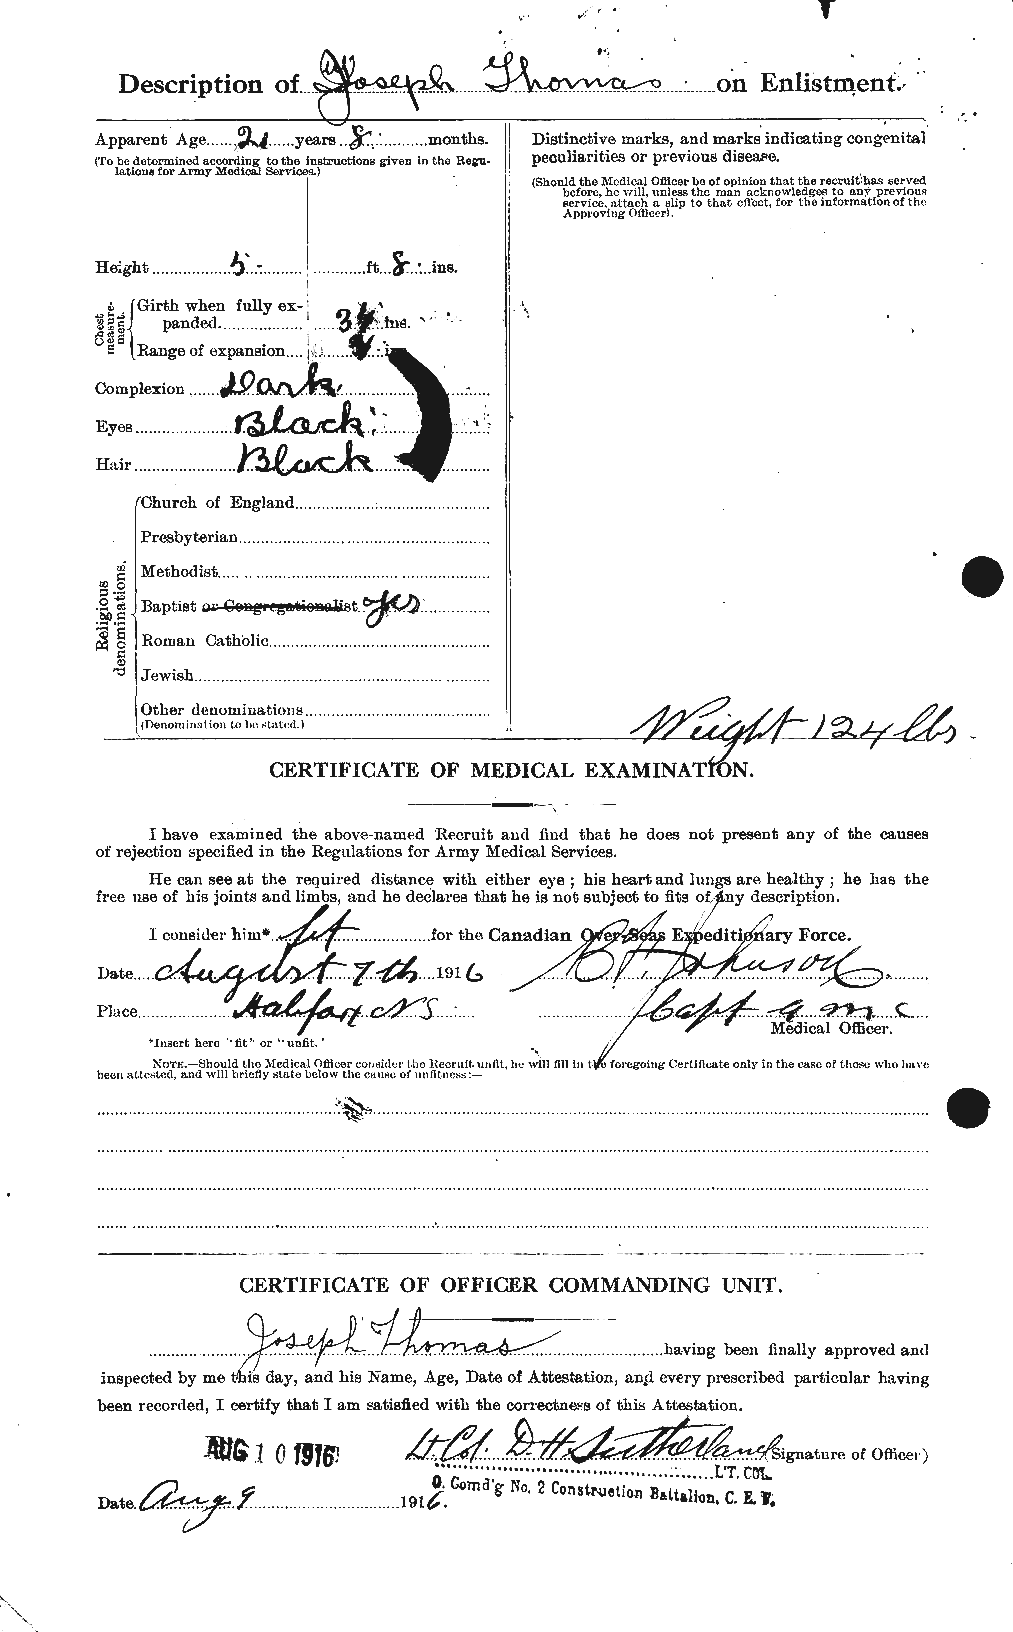 Dossiers du Personnel de la Première Guerre mondiale - CEC 632479b